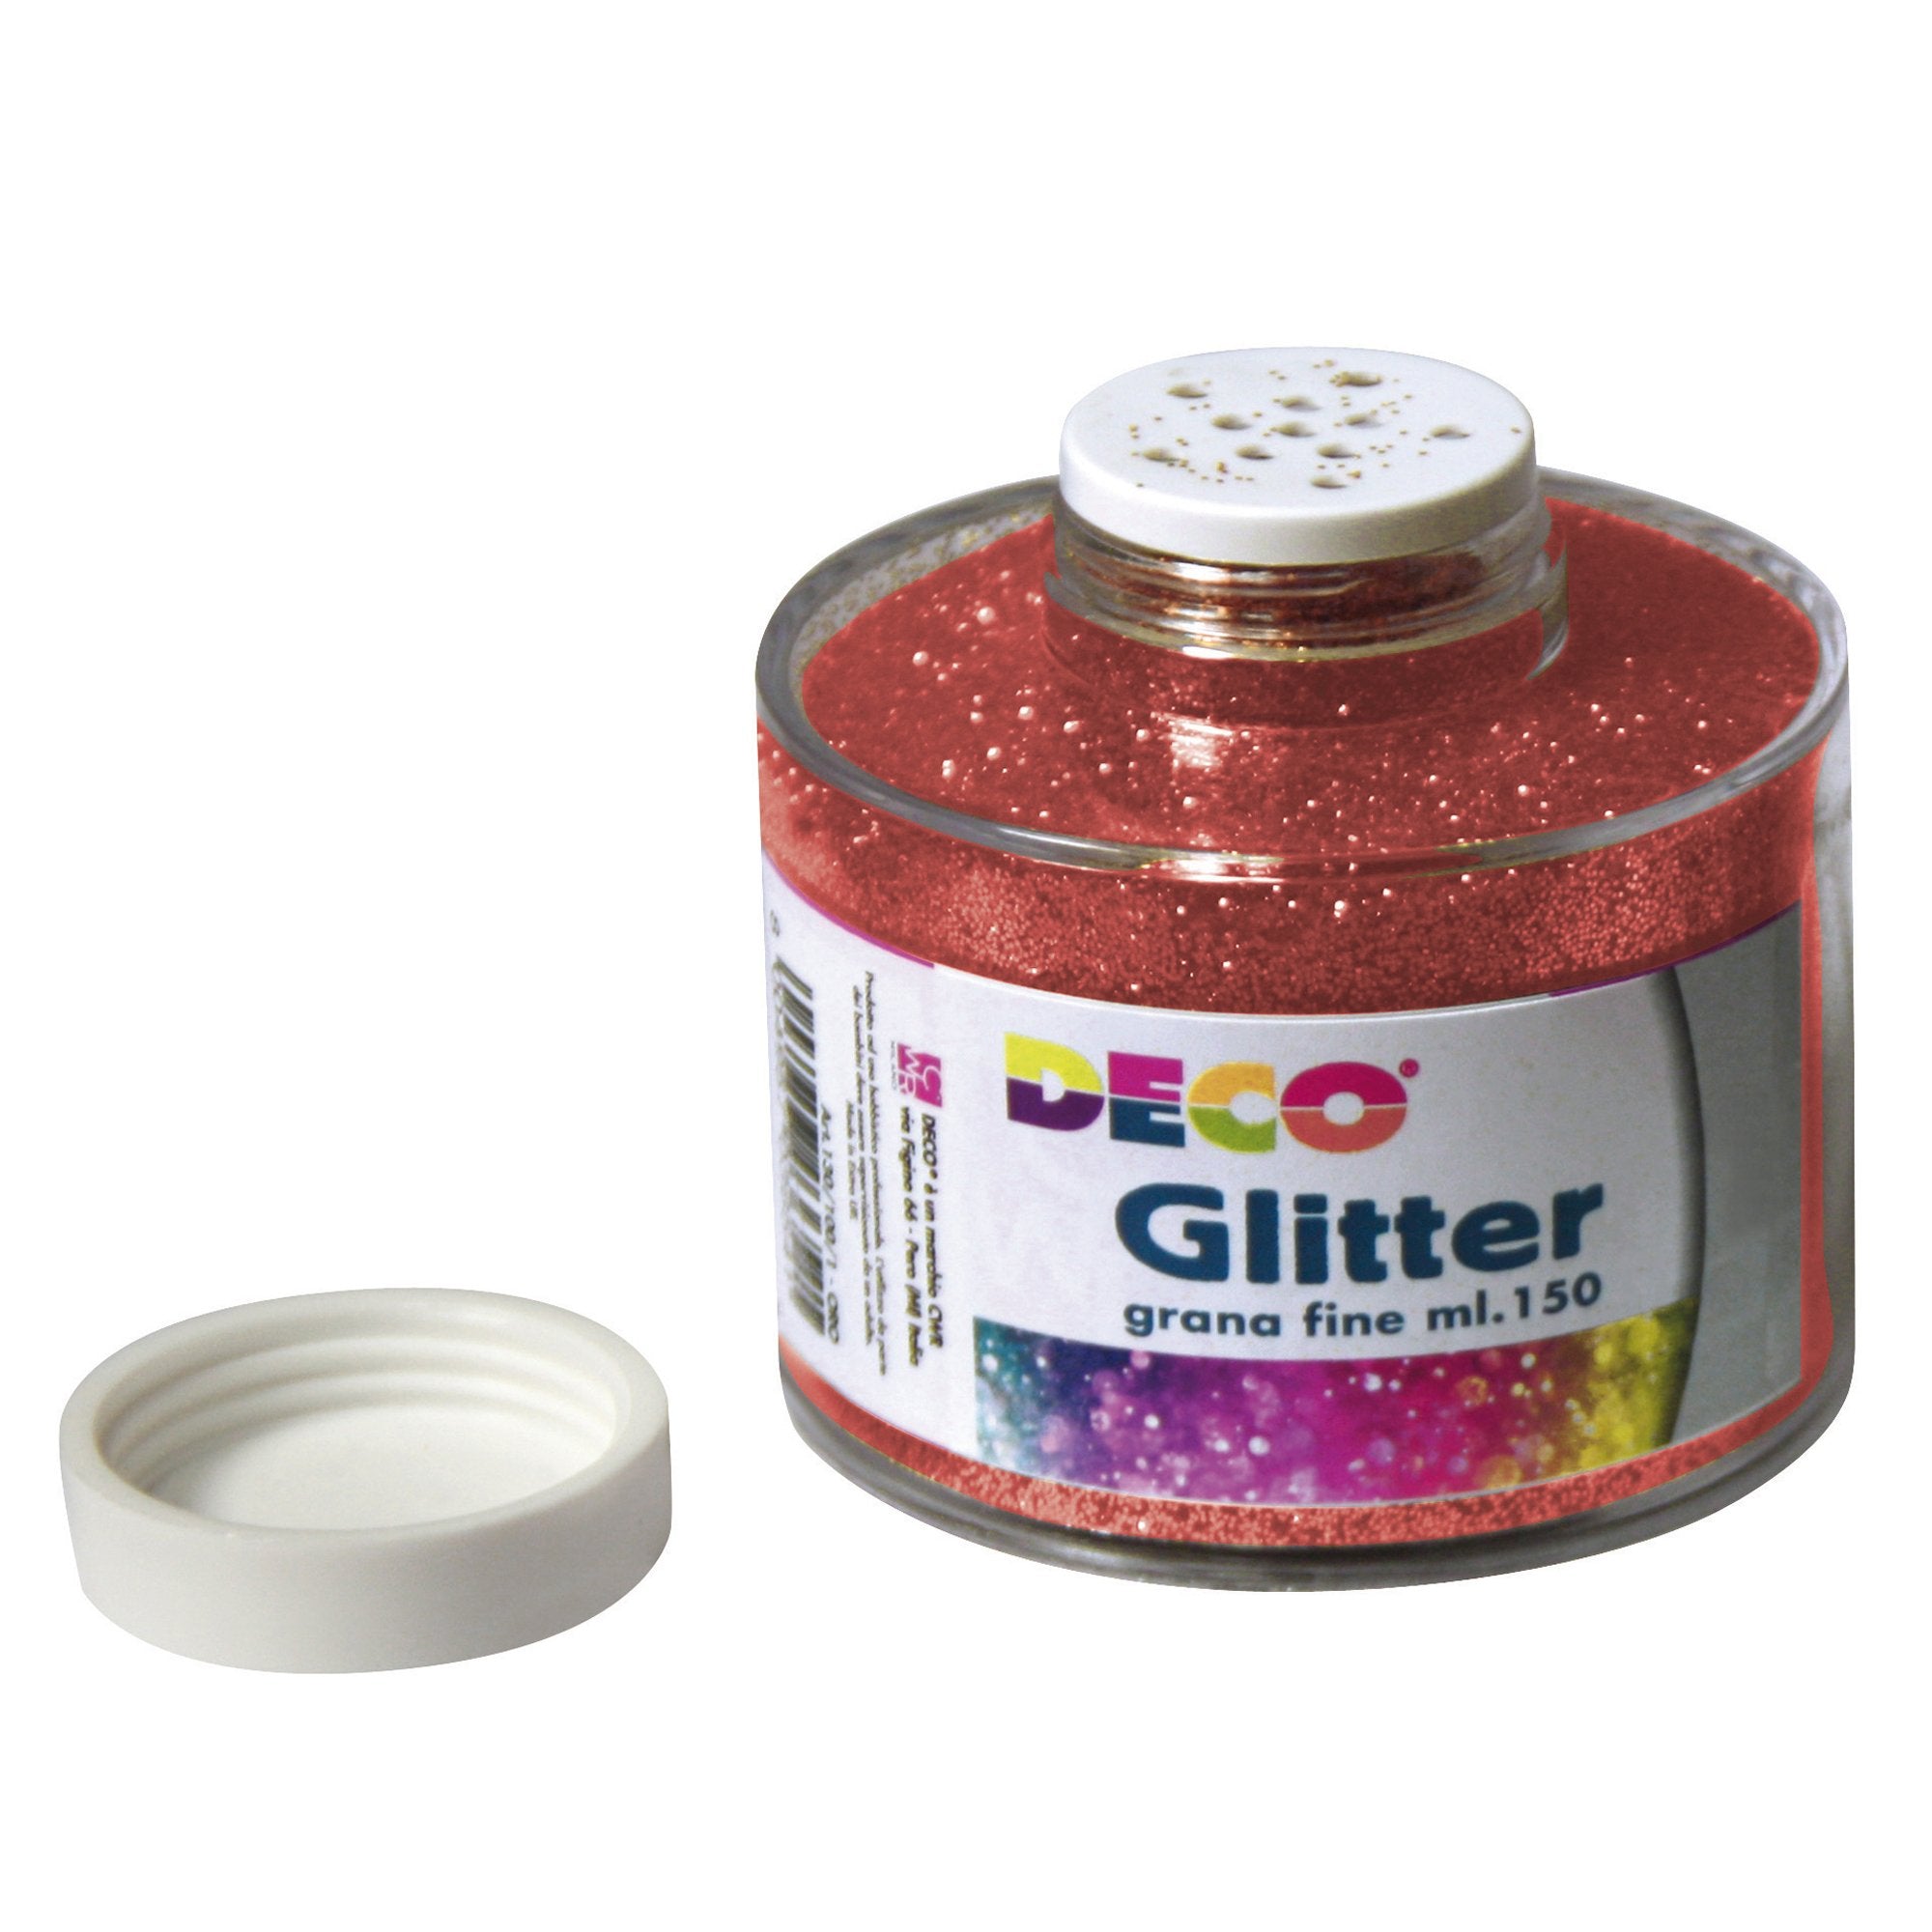 deco-barattolo-glitter-grana-fine-ml150-rosso-art-130-100